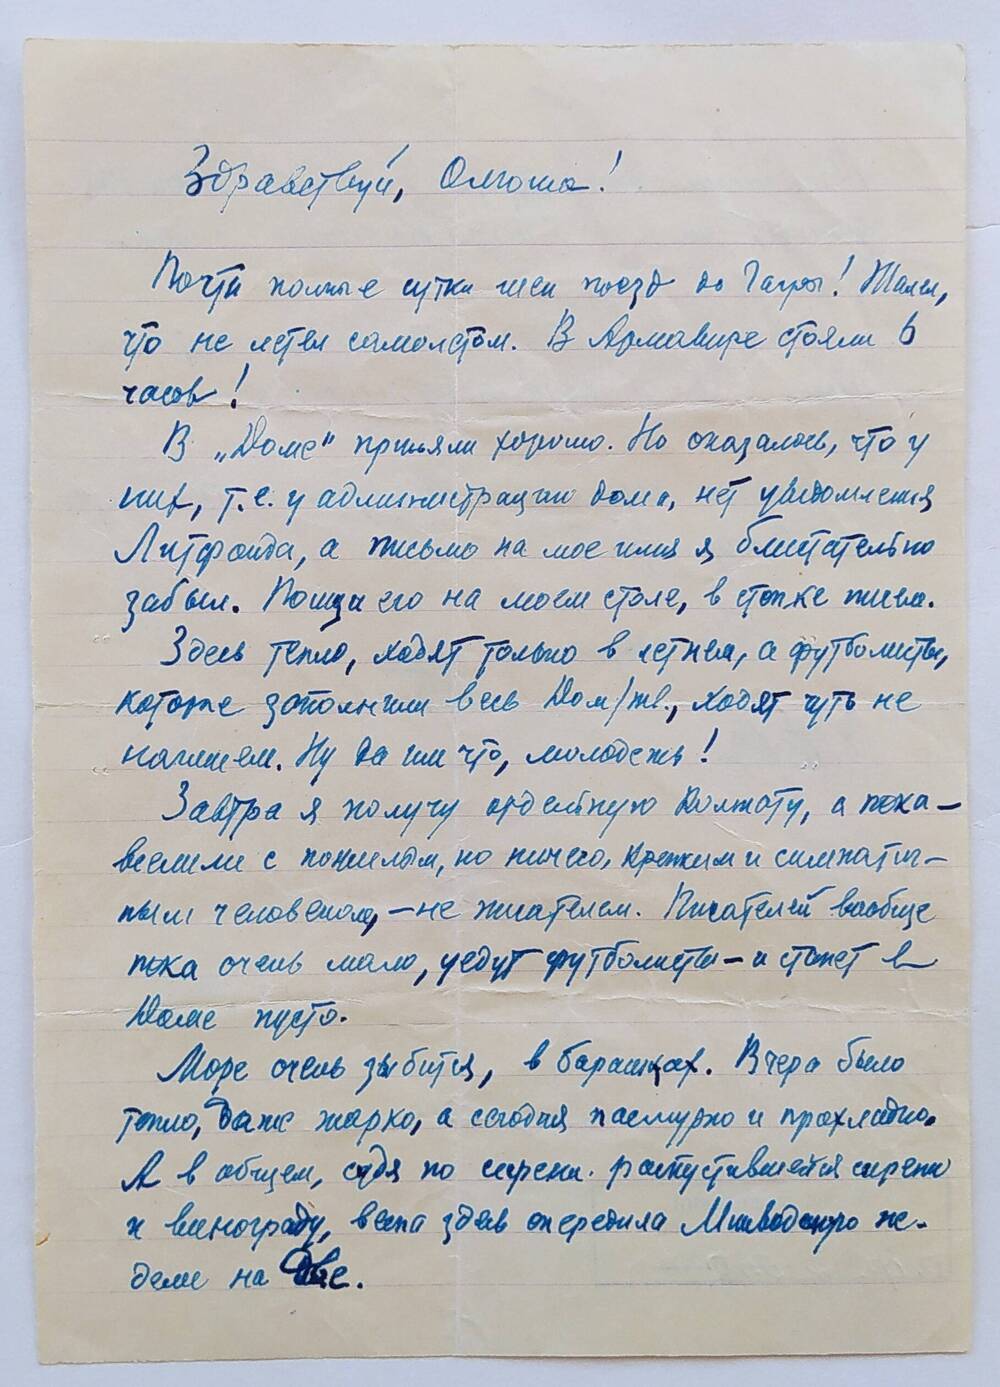 Письмо Ольге Бауэр от отца,  датировано 8/IV.62 г., написано на тетрадном листе в линию, чернильной ручкой синего цвета.